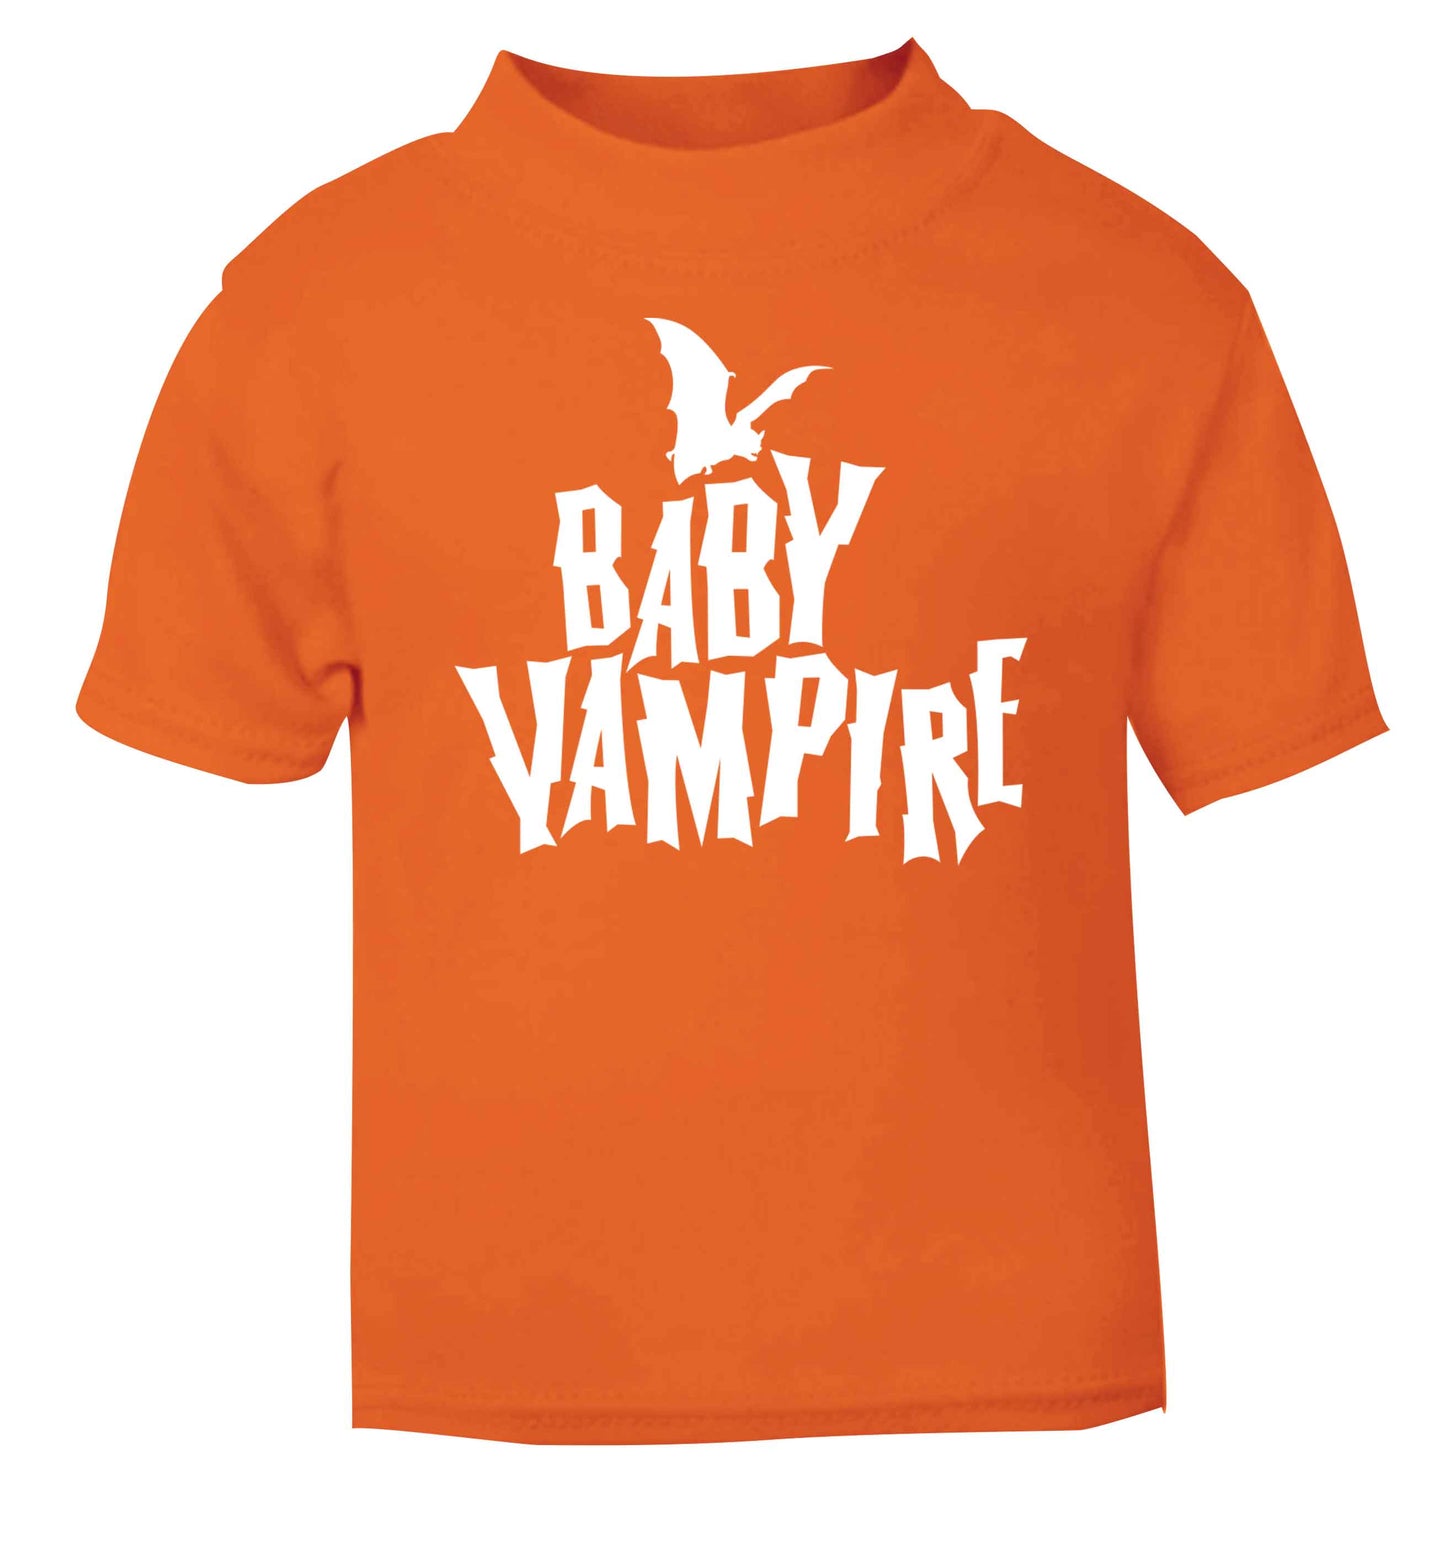 Baby vampire orange baby toddler Tshirt 2 Years